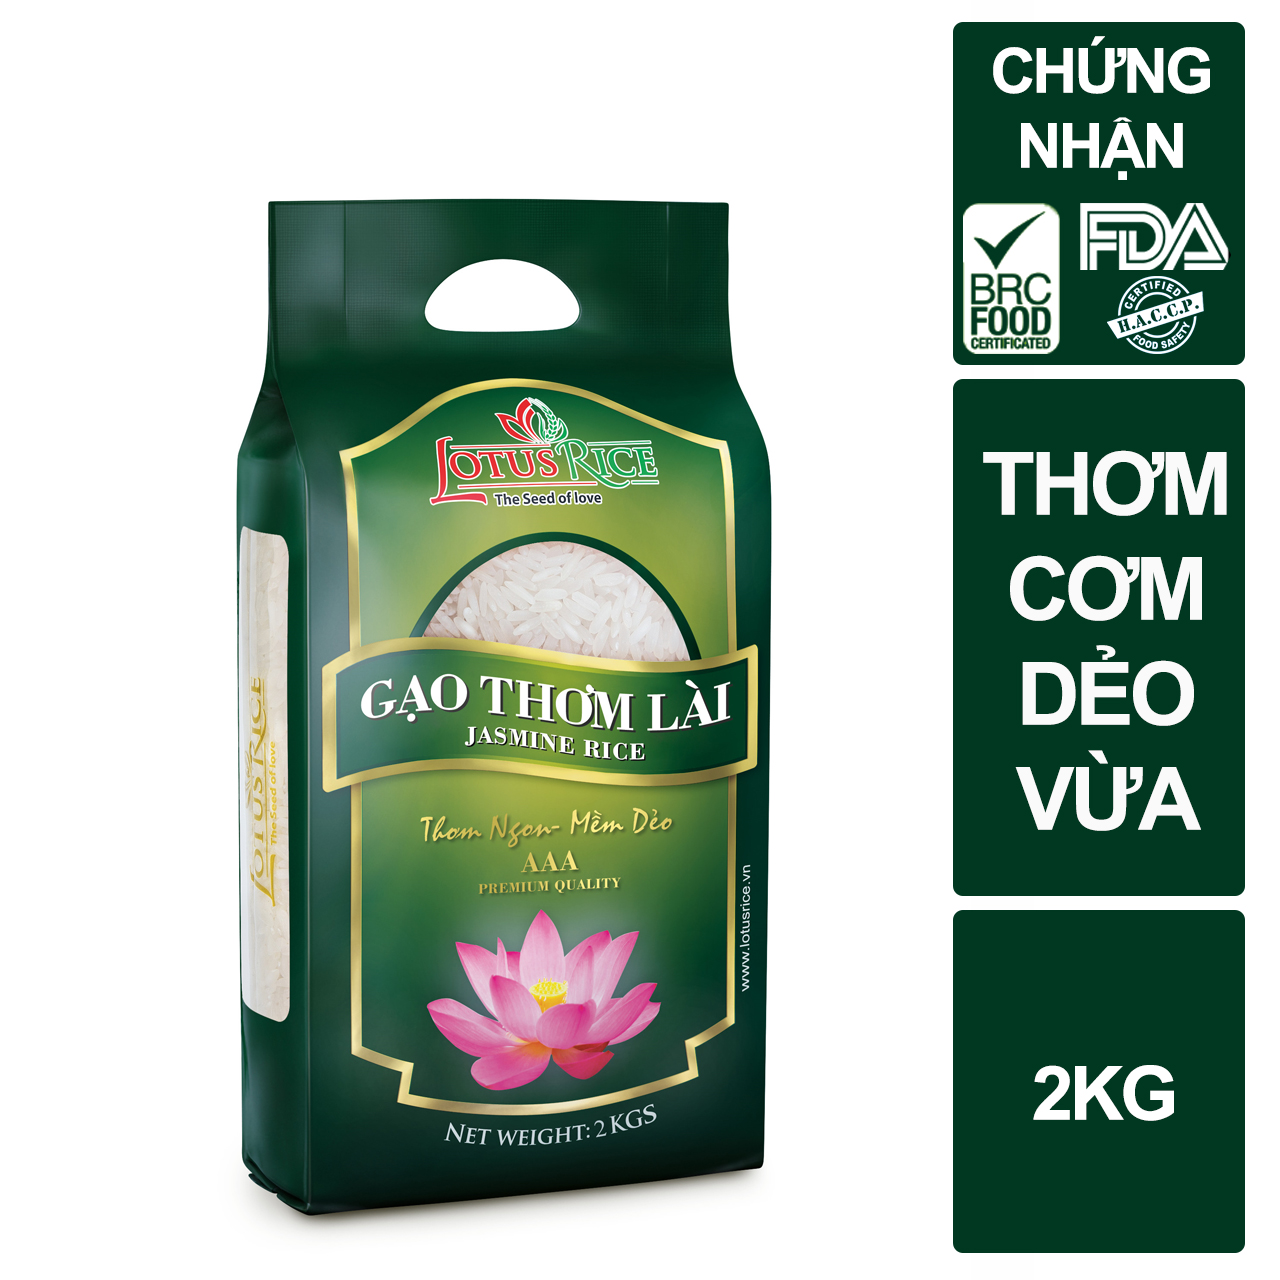 Gạo Thơm Lài Lotus Rice 2kg - Cơm ngon dẻo vừa - Chuẩn xuất khẩu